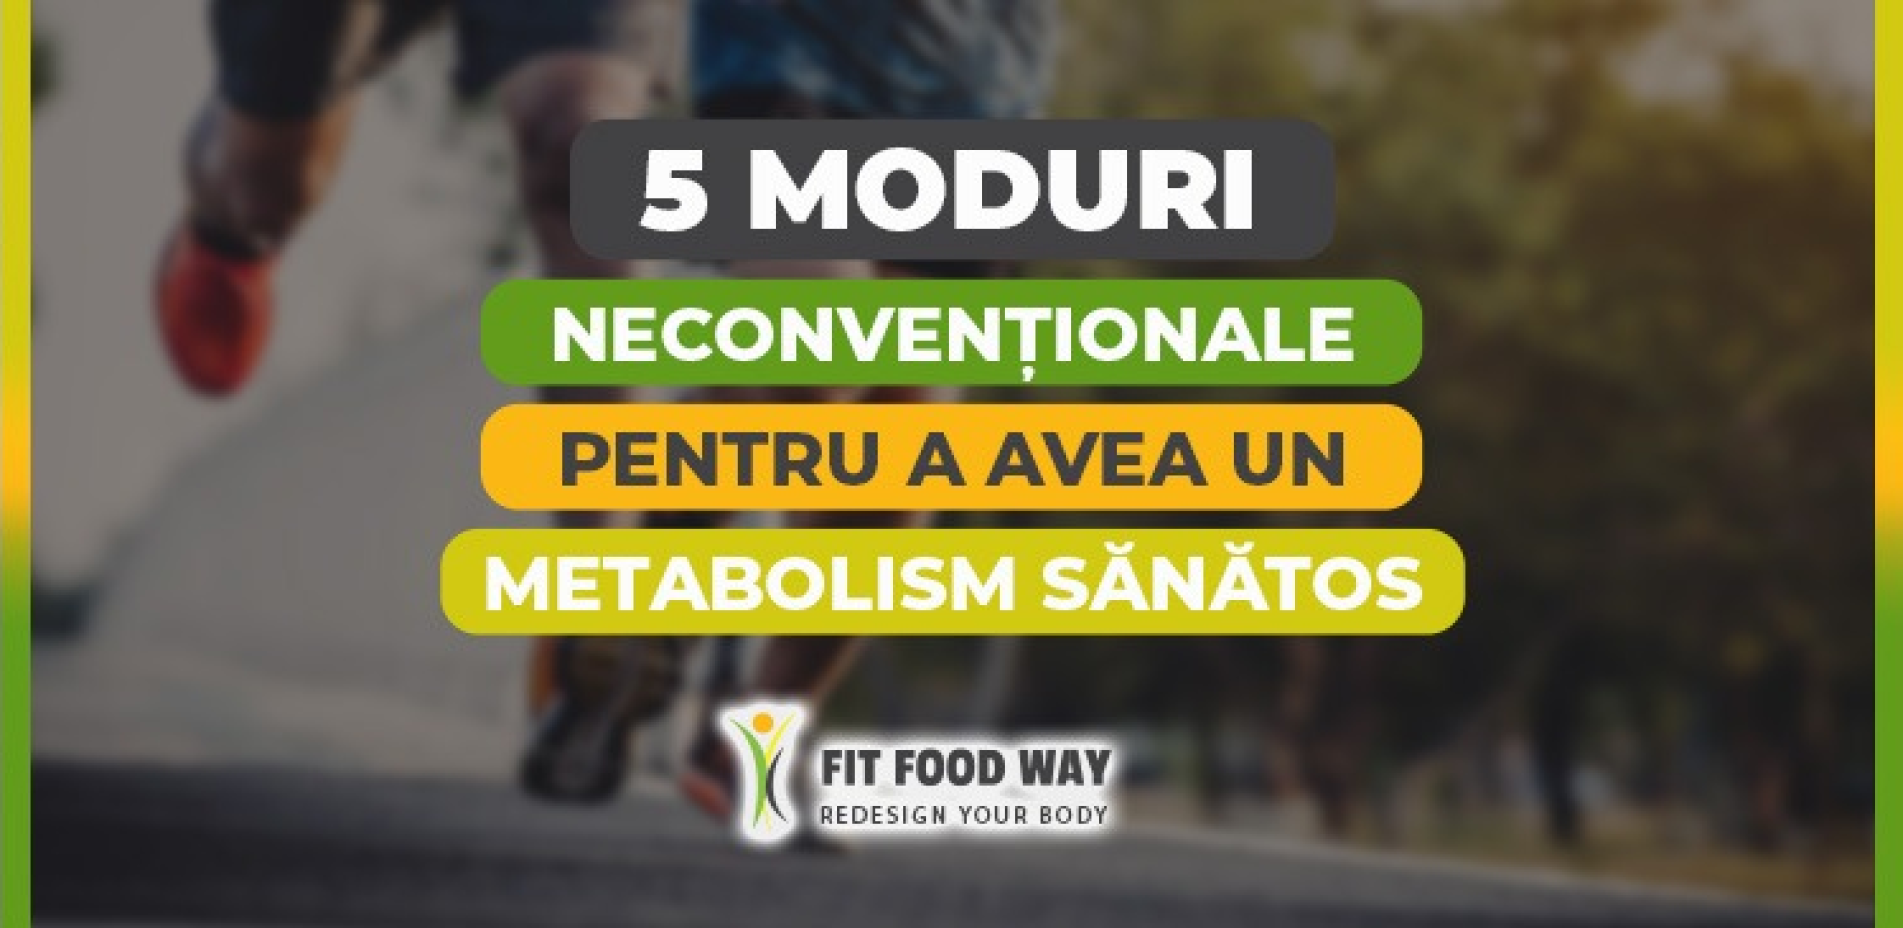 5 moduri neconvenționale pentru a avea un metabolism sănătos